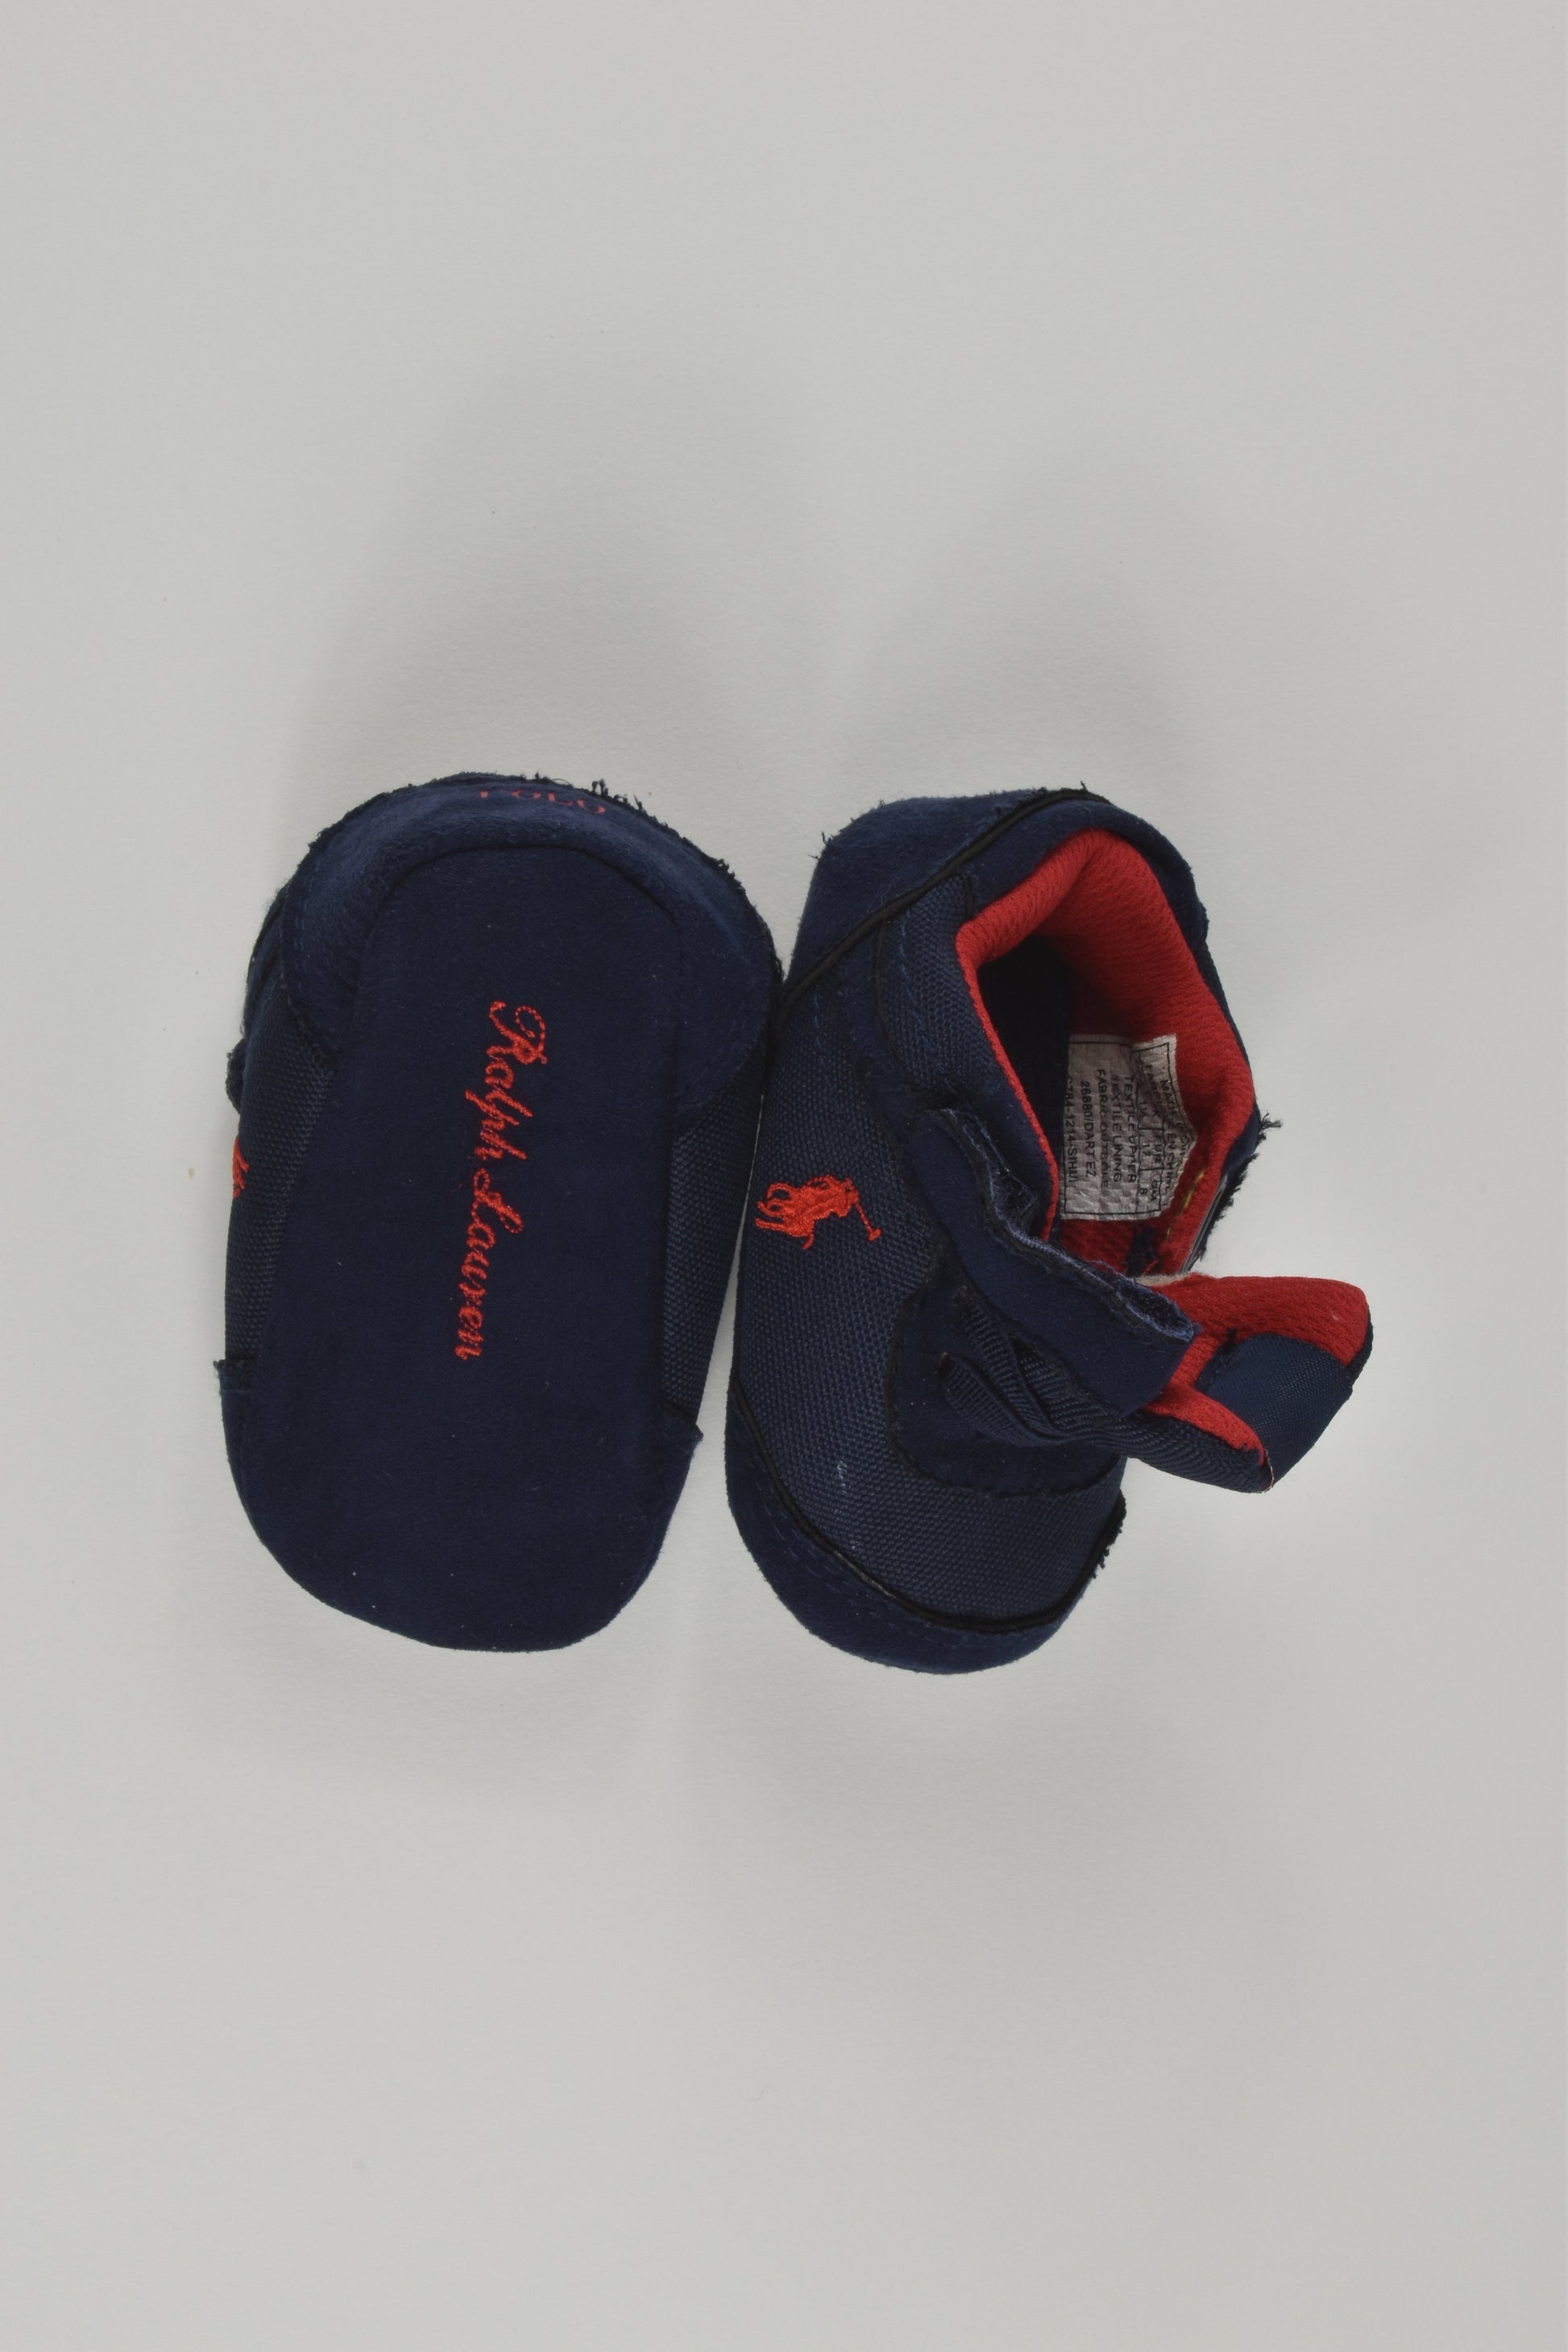 Ralph Lauren Size US 2 Baby Slippers